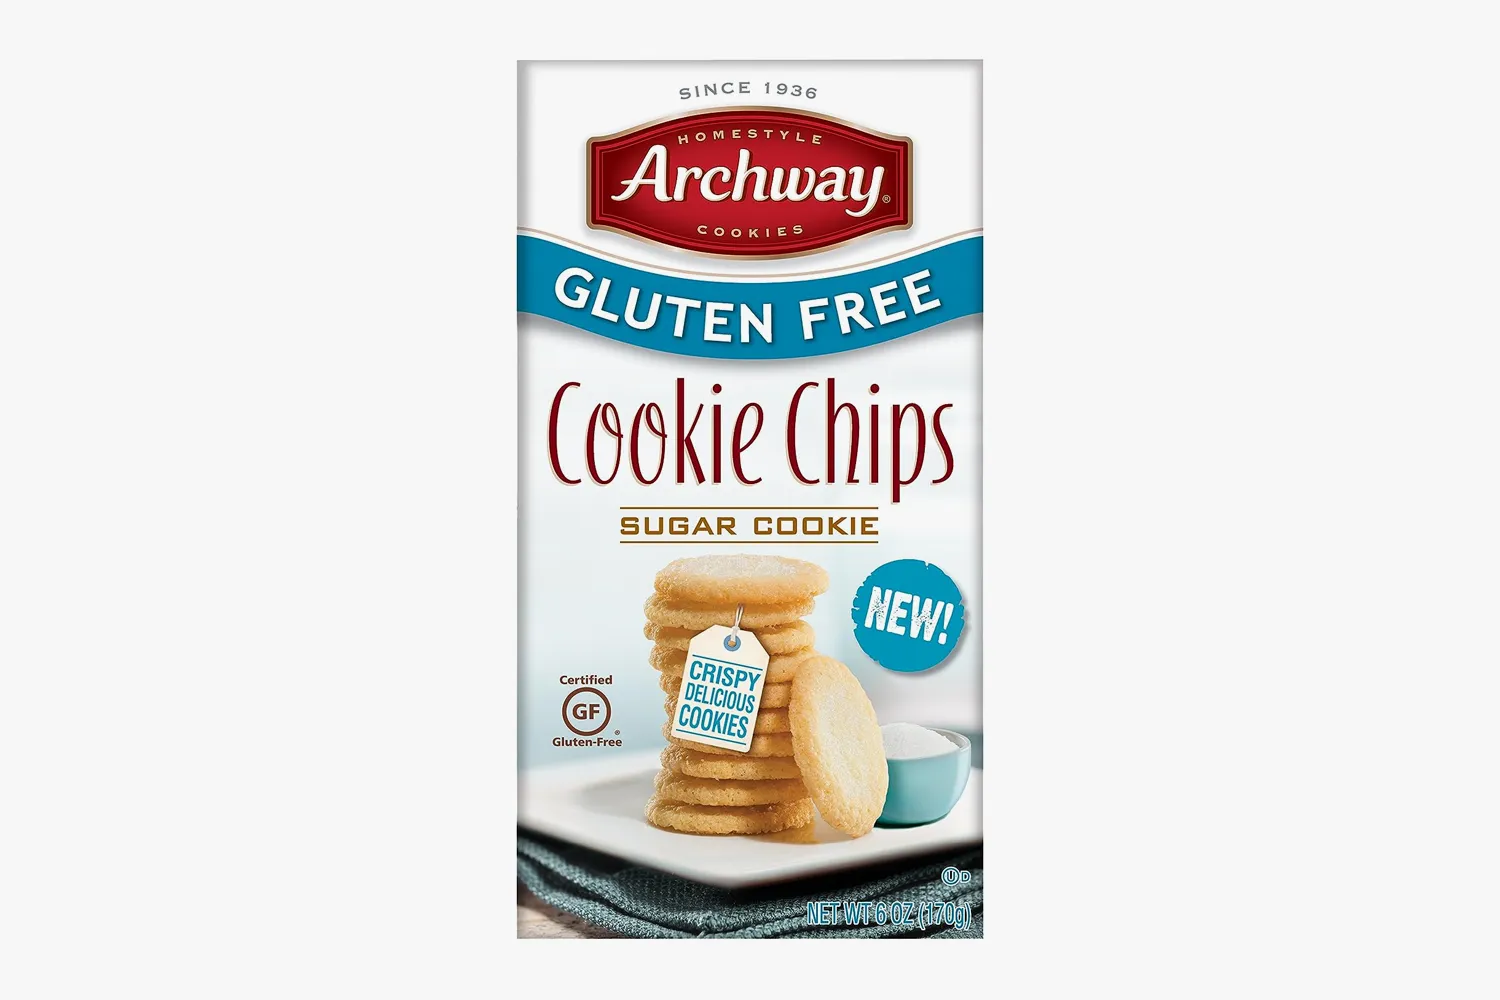 Archway Gluten-Free Cookie Chip